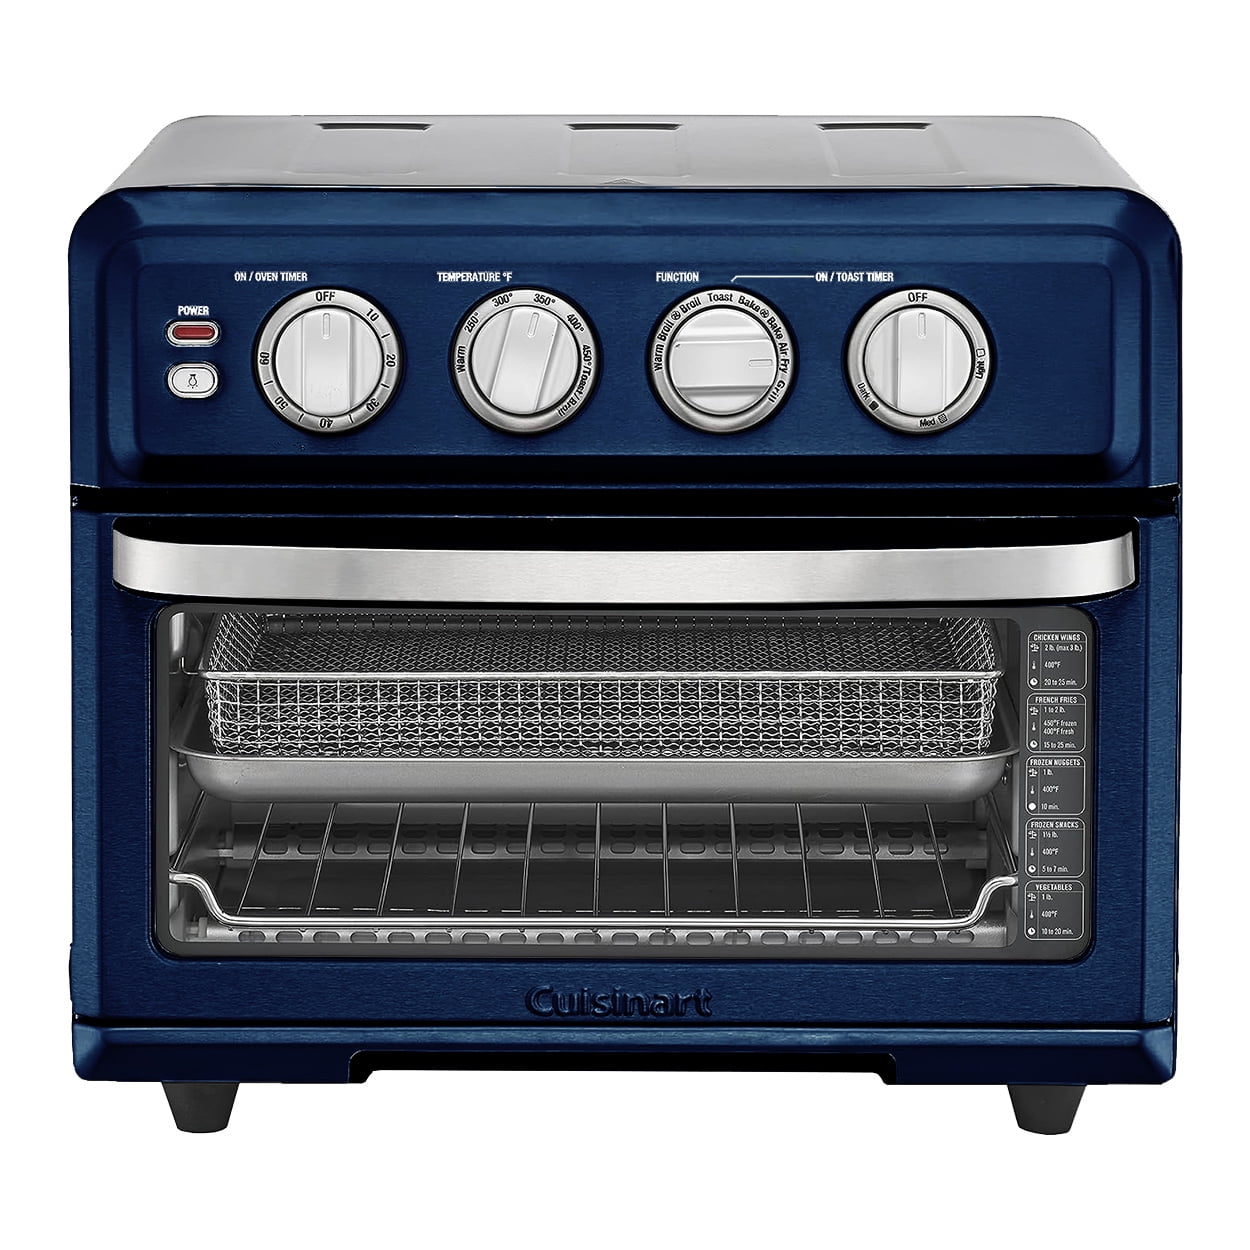 Cuisinart Air Fryer Toaster Oven - Best Buy